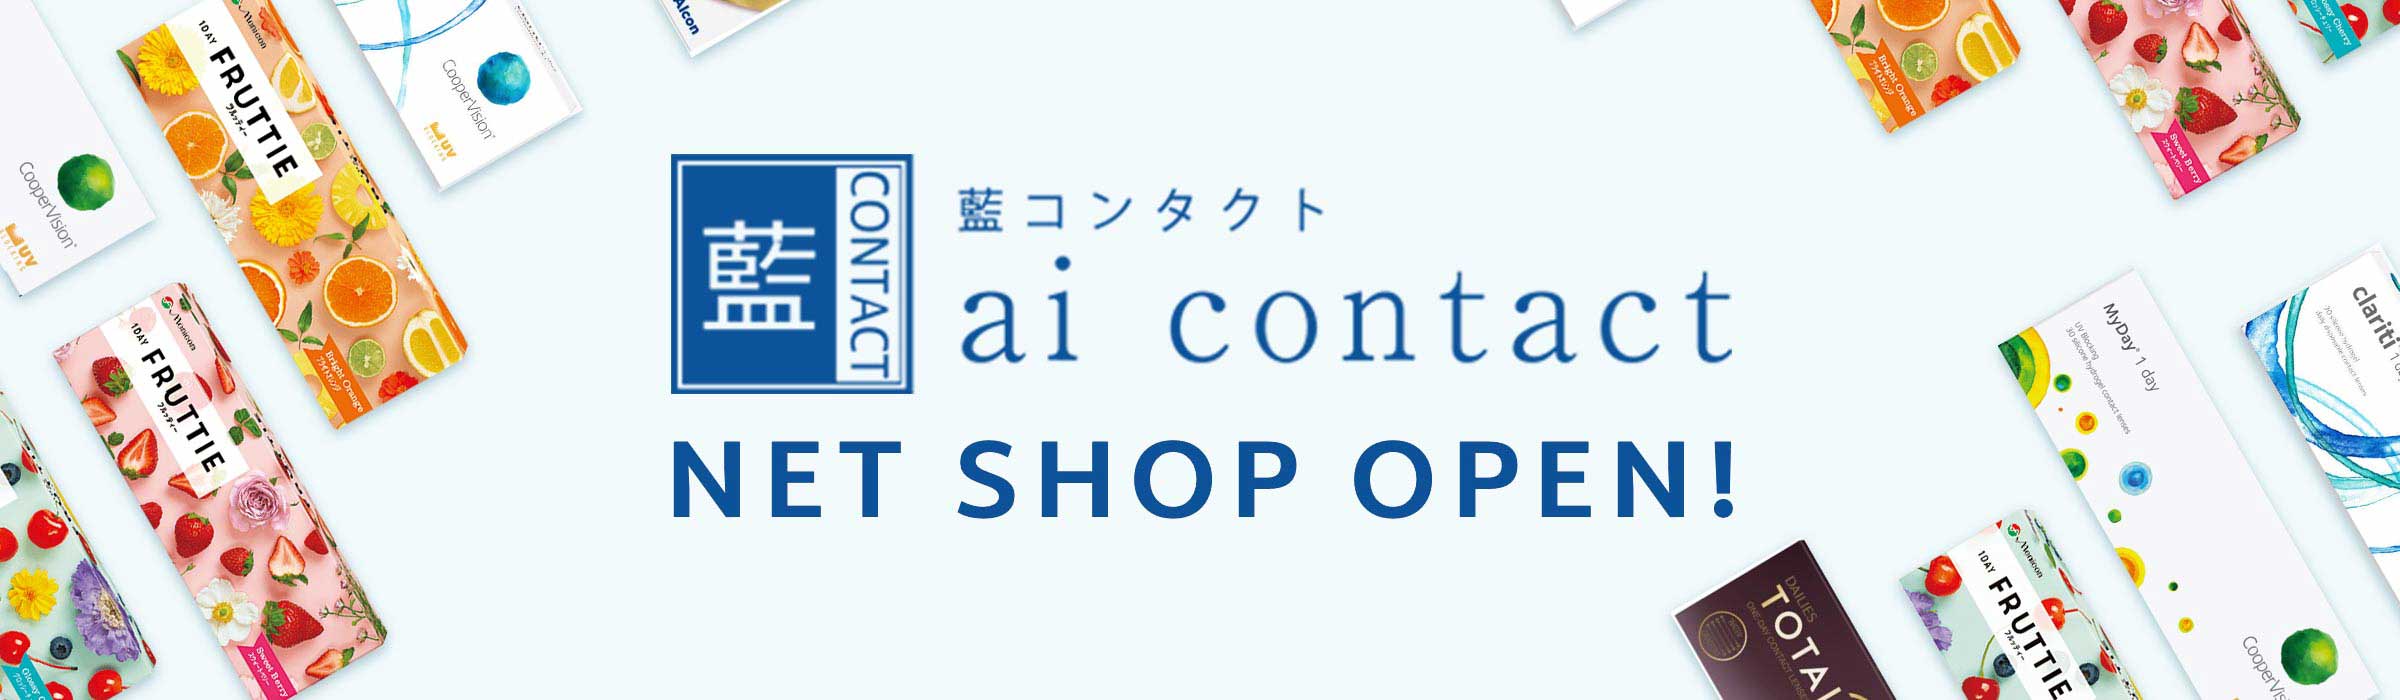 【1月14日 10:00 OPEN】ネットショップ オープン